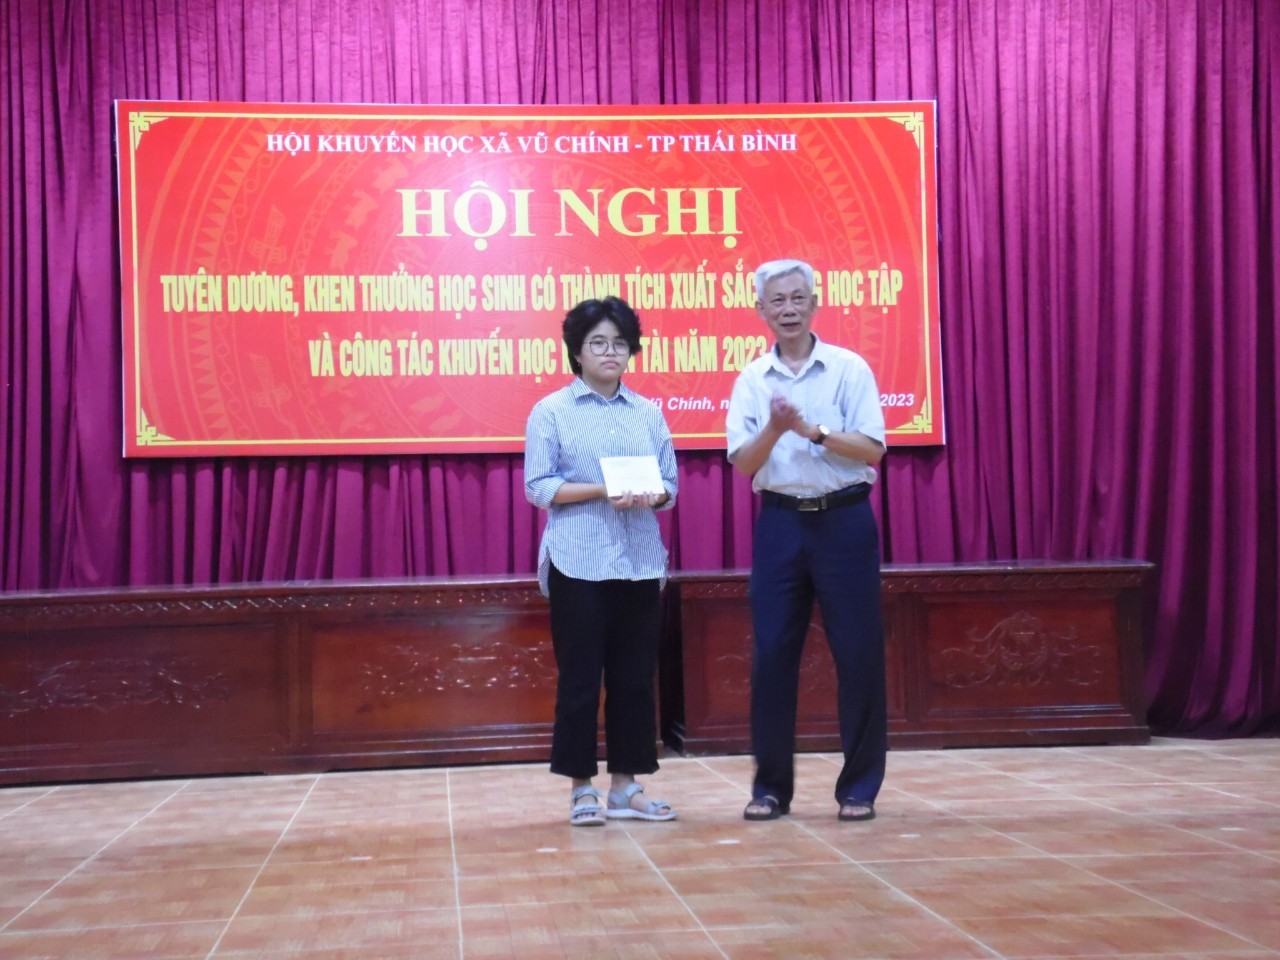 Hội Khuyến học xã Vũ Chính, Thành Phố Thái Bình tuyên dương, khen thưởng học sinh giỏi năm học 2022-2023